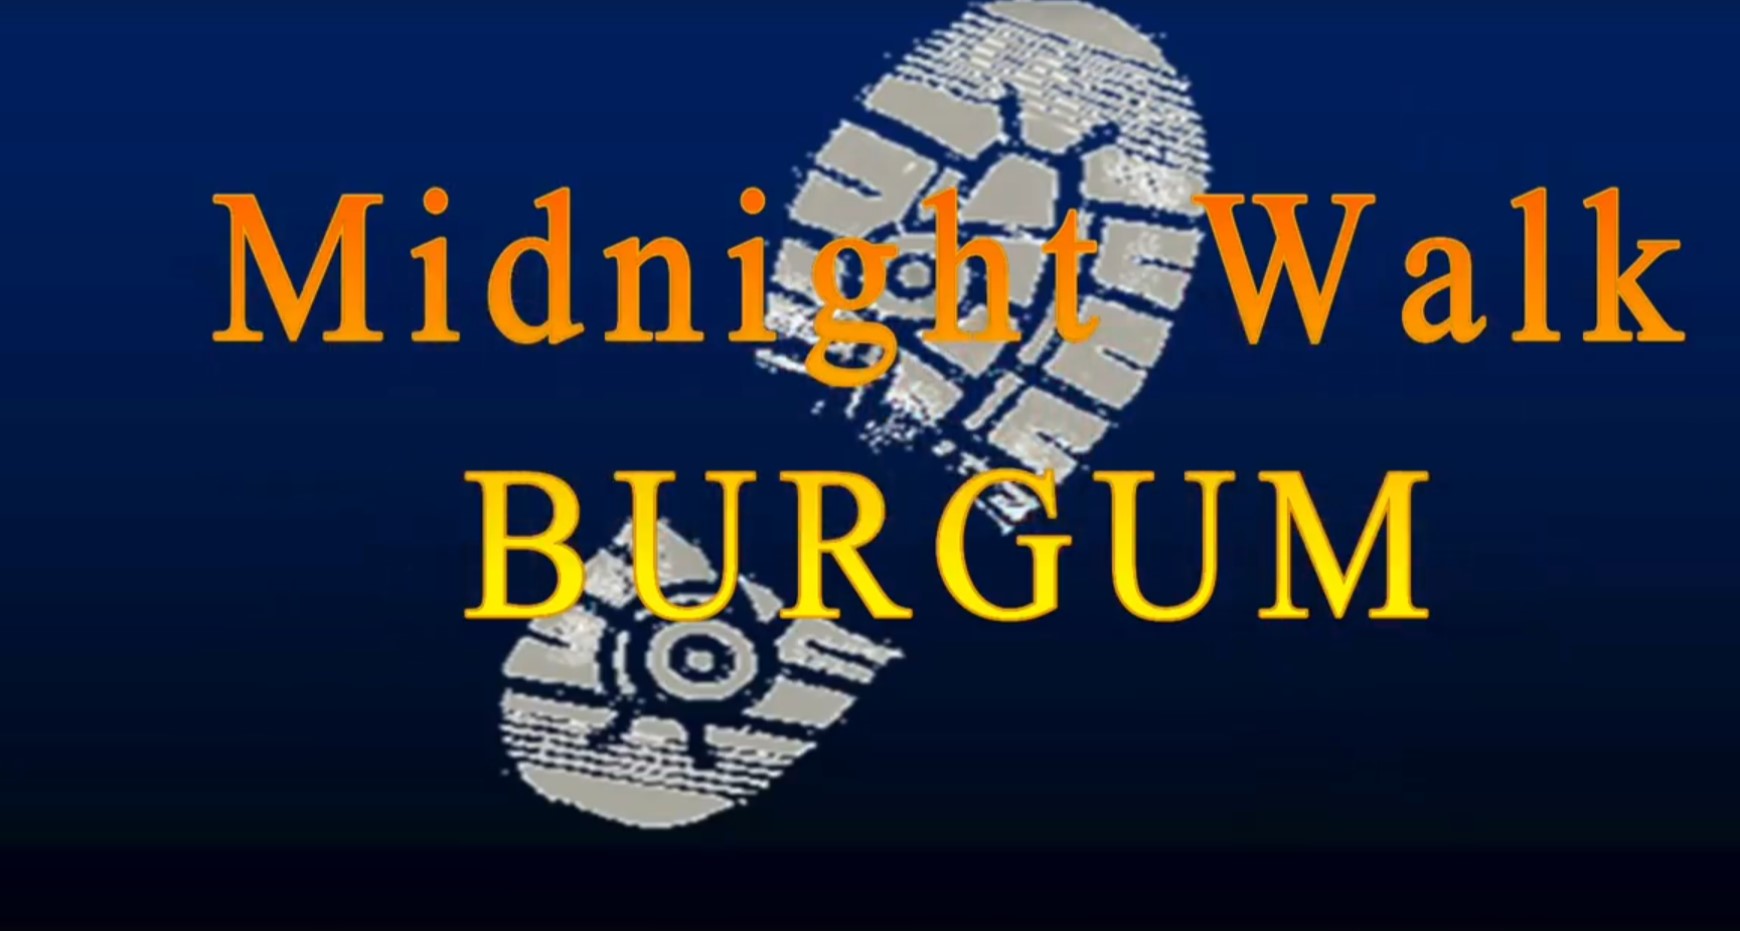 Midnightwalk ook door kantine FC Burgum 